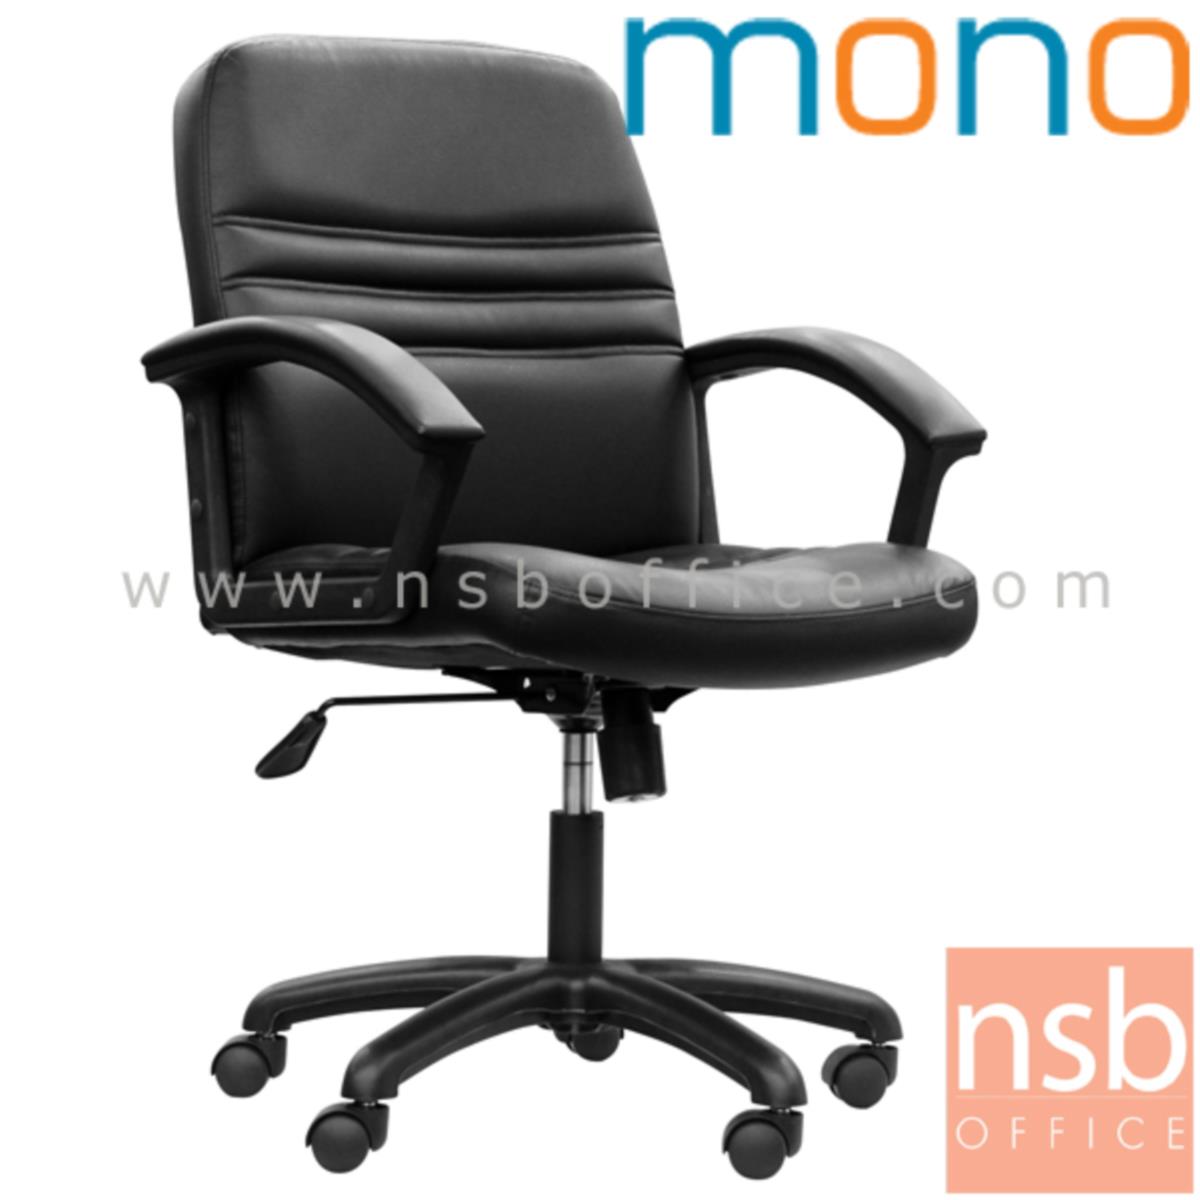 B26A071:เก้าอี้สำนักงาน  รุ่น MONO PK01/A  โช๊คแก๊ส มีก้อนโยก